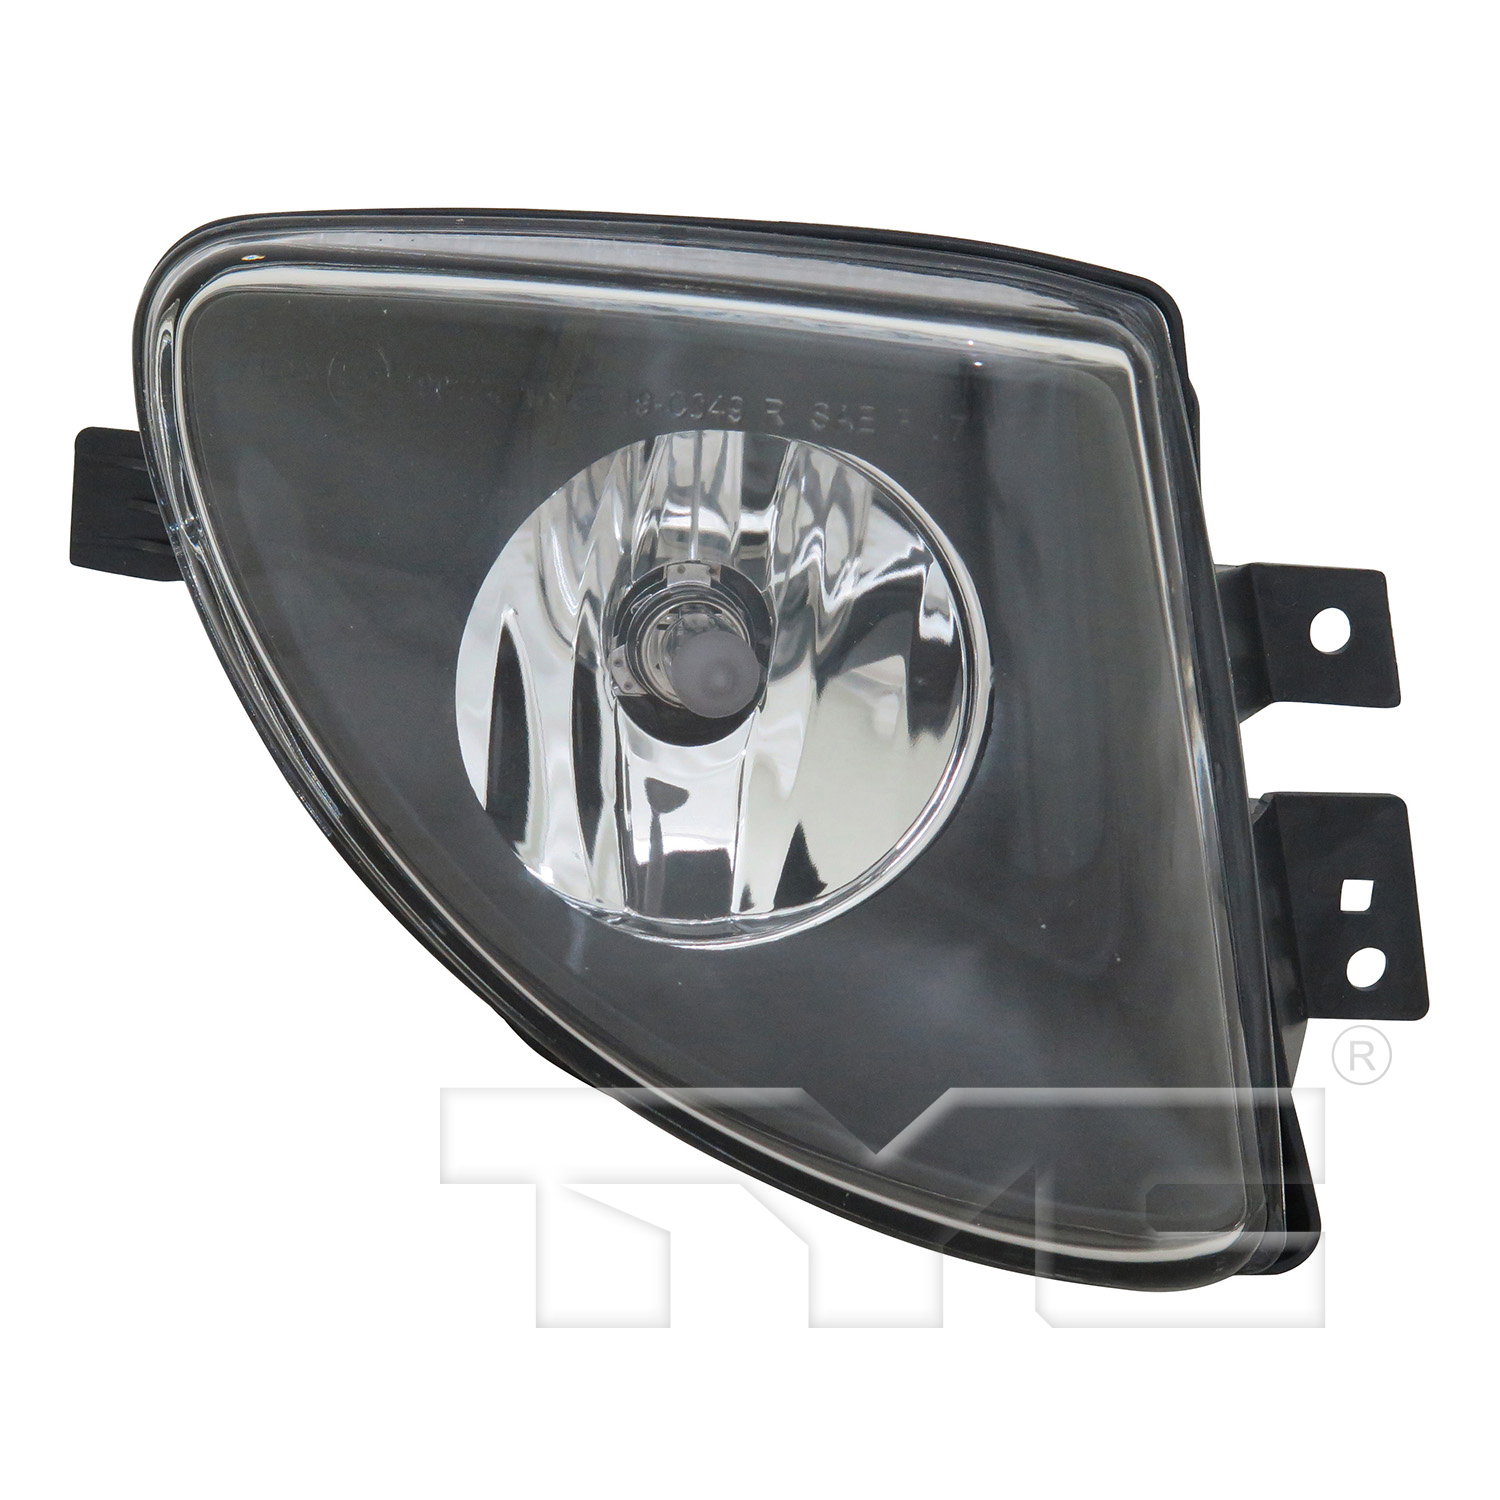 Aftermarket FOG LIGHTS for BMW - 550I, 550i,11-13,RT Fog lamp assy